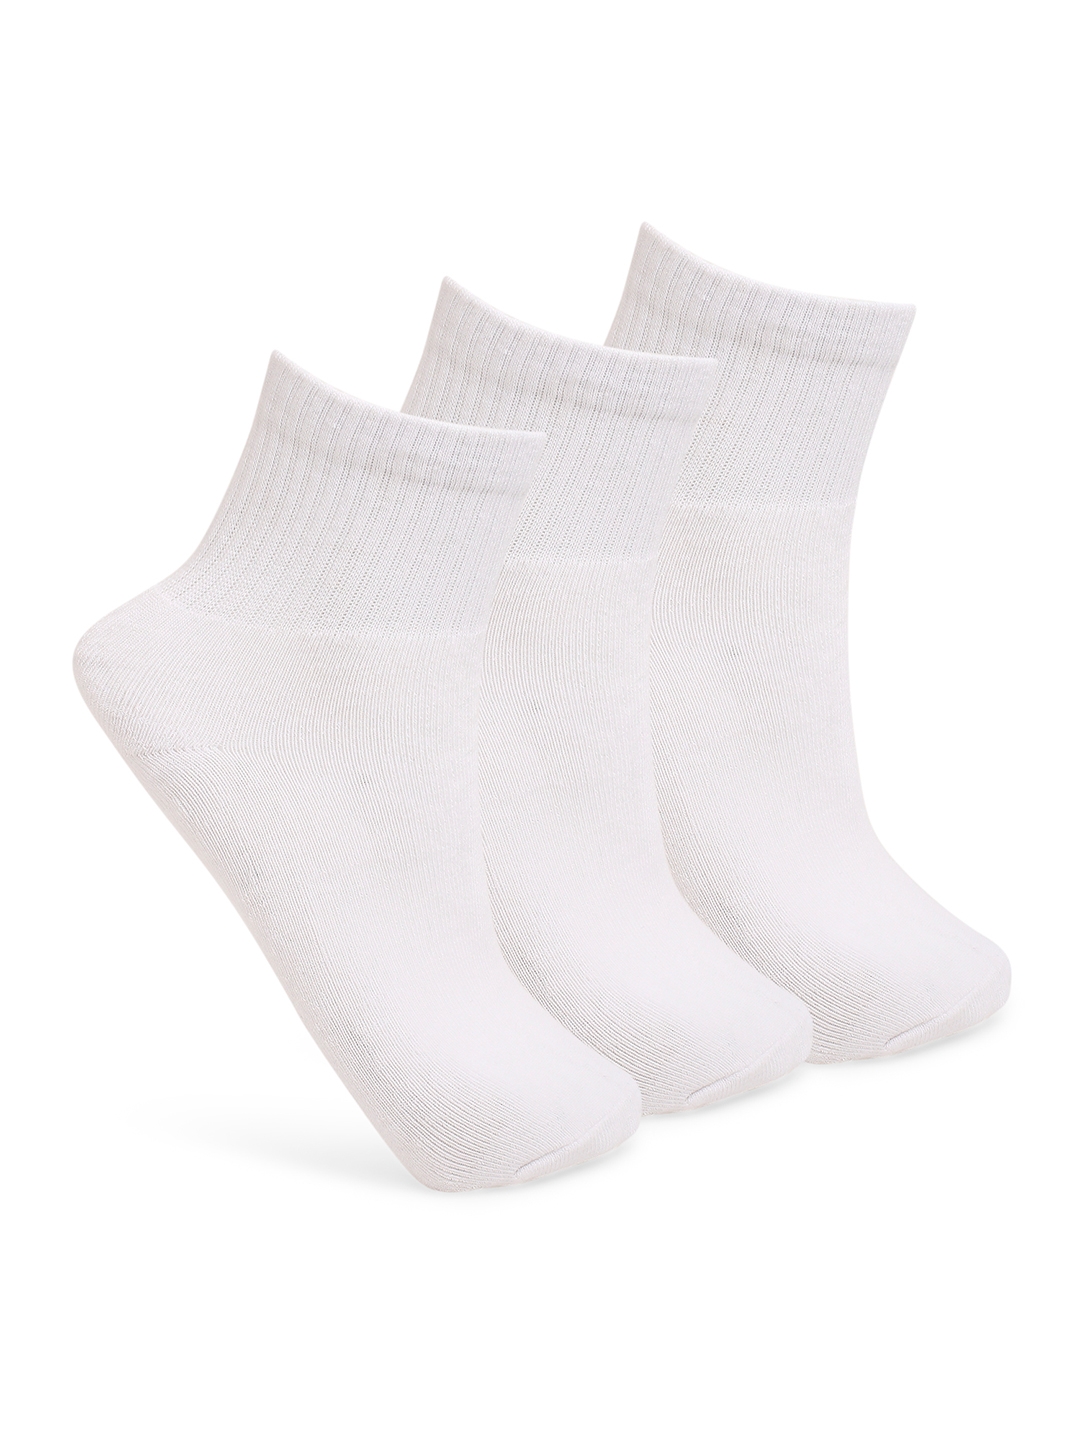 Underjeans by Spykar Men White Cotton Socks - Pack Of 3